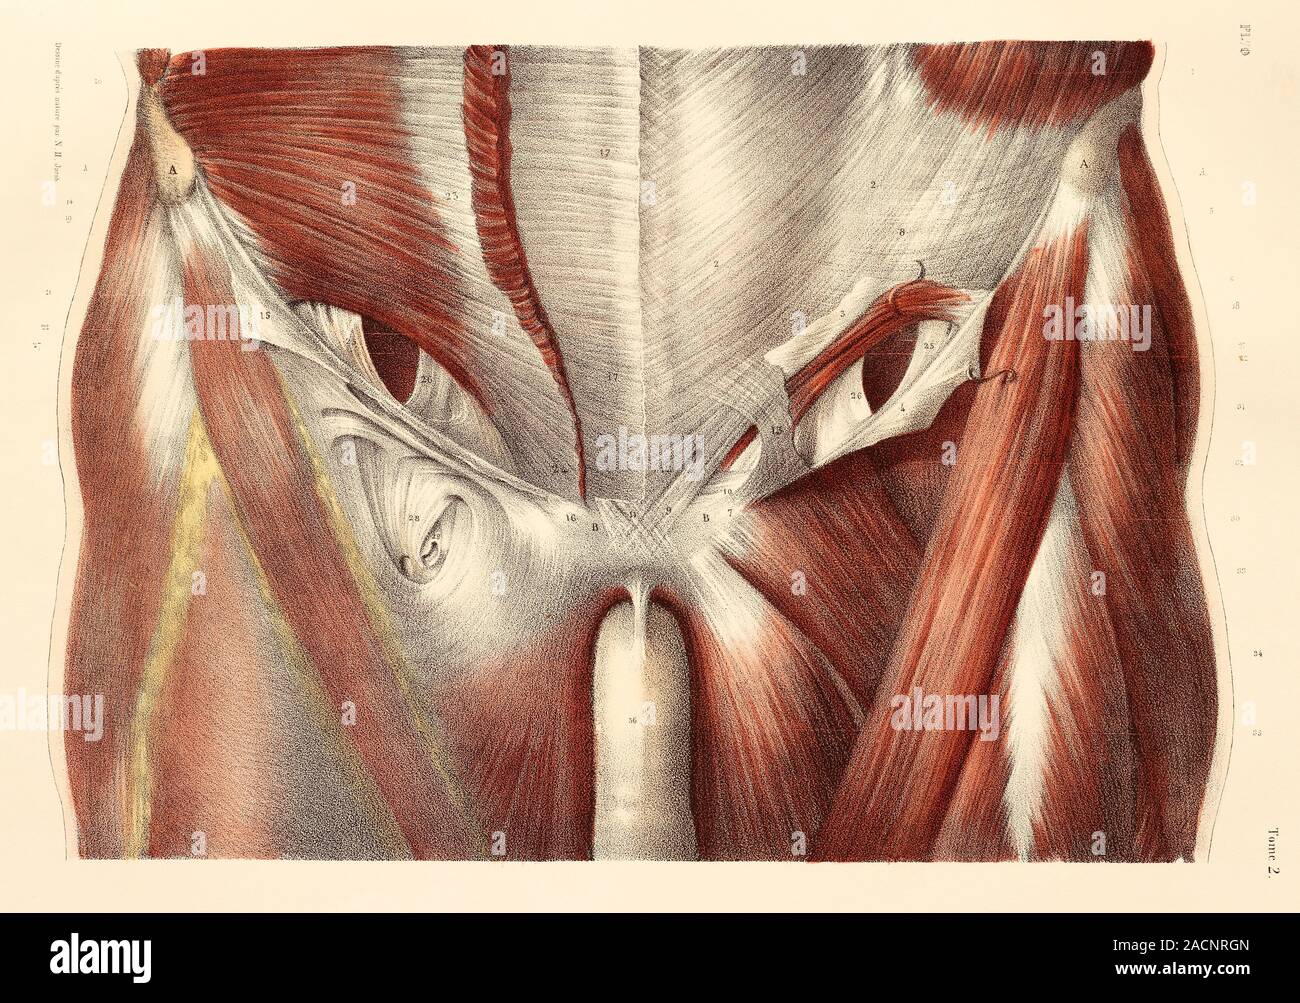 Leiste Muskeln. Muskeln der anterioren Wand des unteren (Leiste) Region der  Amtsleitung, mit einer Studie über den Leistenkanal. Diese anatomische  Artwork ist p Stockfotografie - Alamy